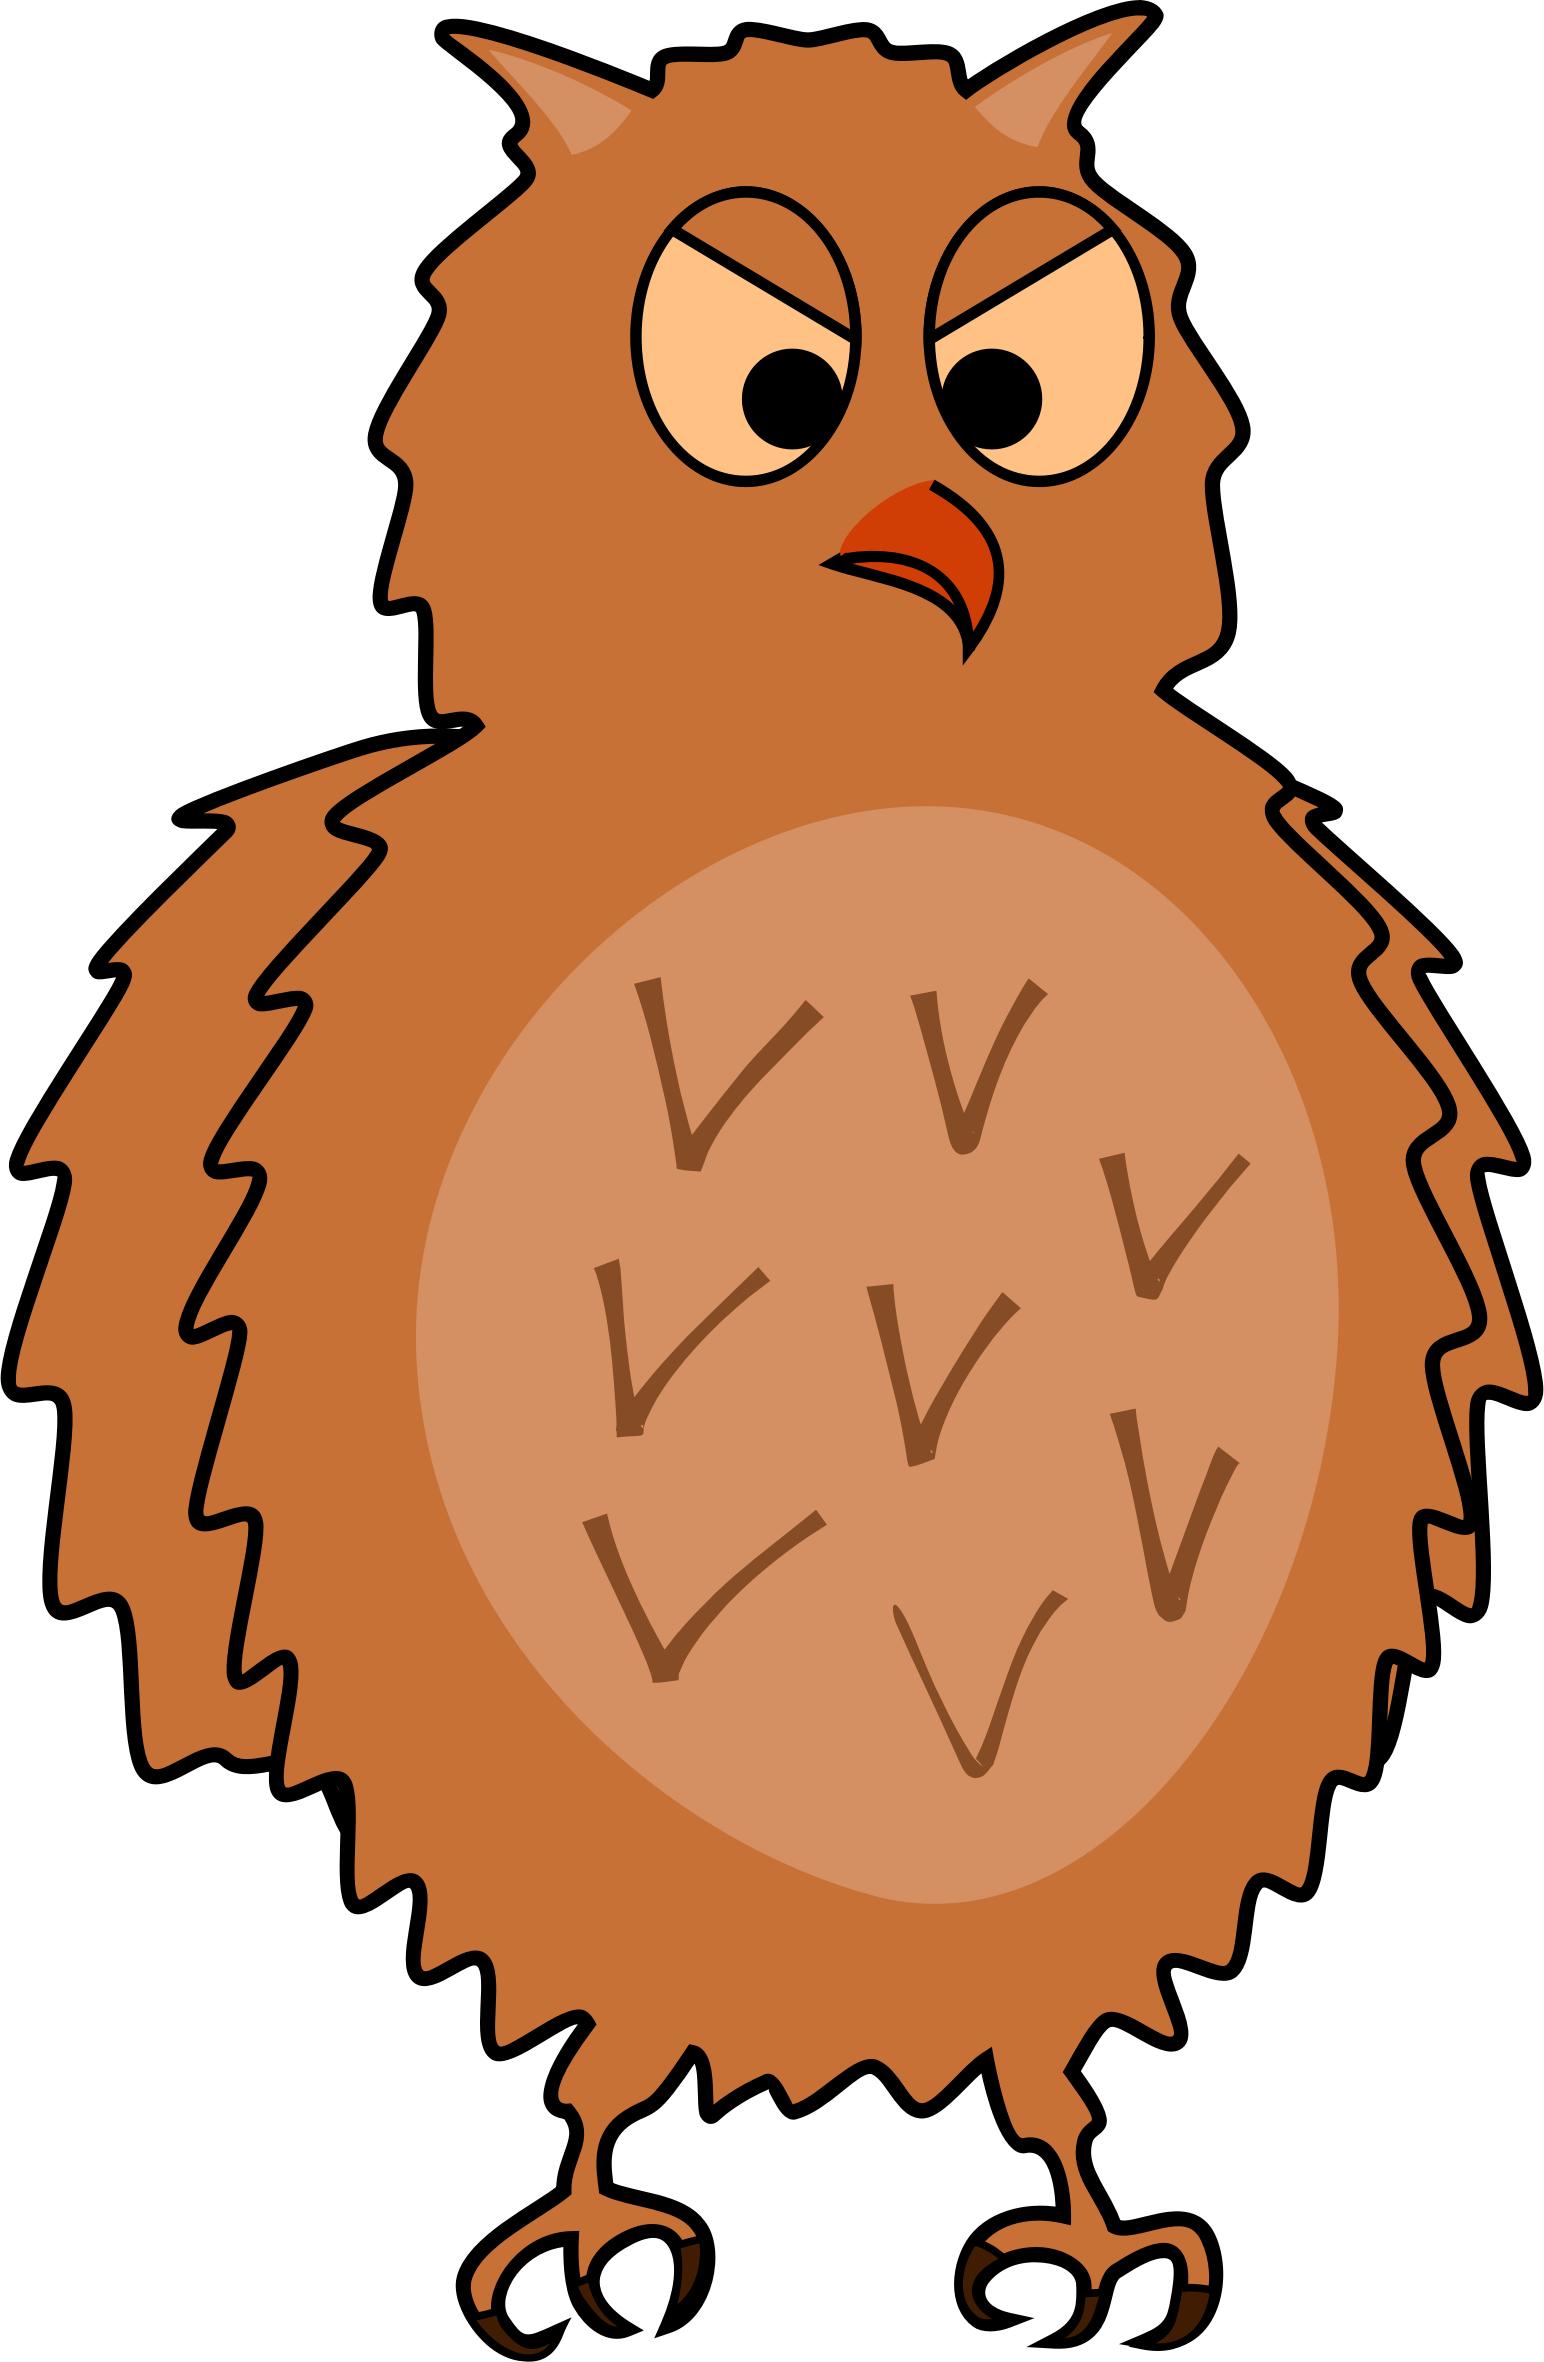 Enraged owl icons